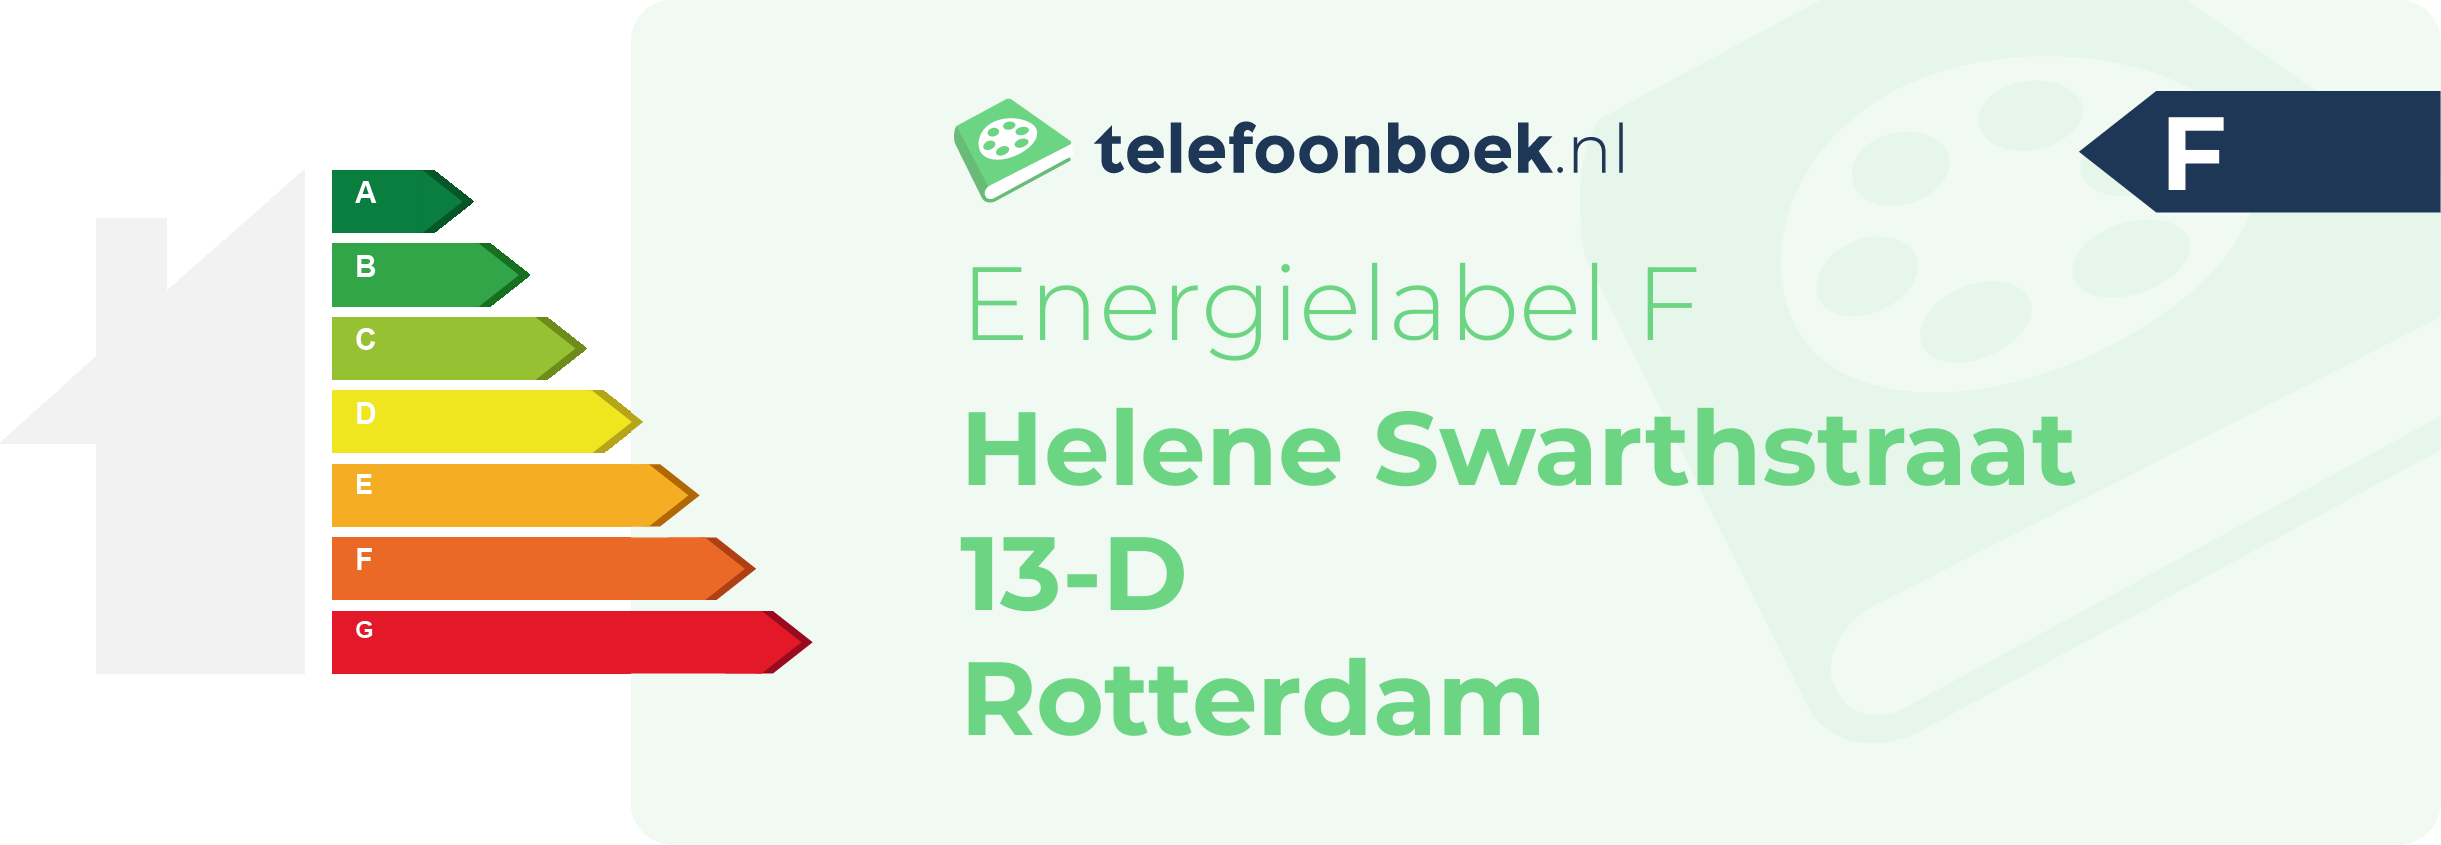 Energielabel Helene Swarthstraat 13-D Rotterdam